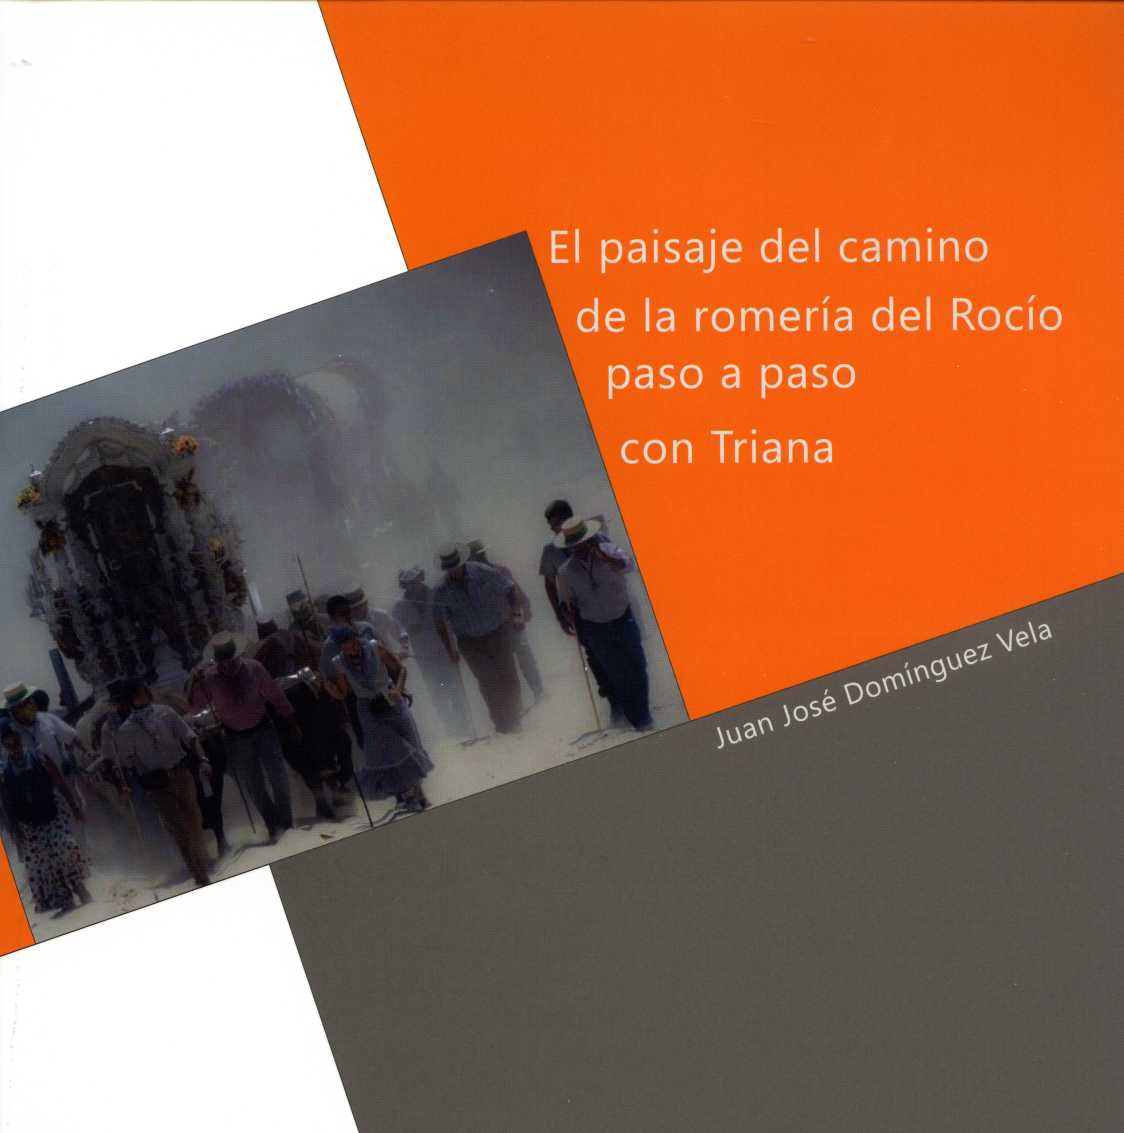 La Diputación Provincial de Sevilla presenta el libro "El paisaje del camino de la romería del Rocío paso a paso con Triana"